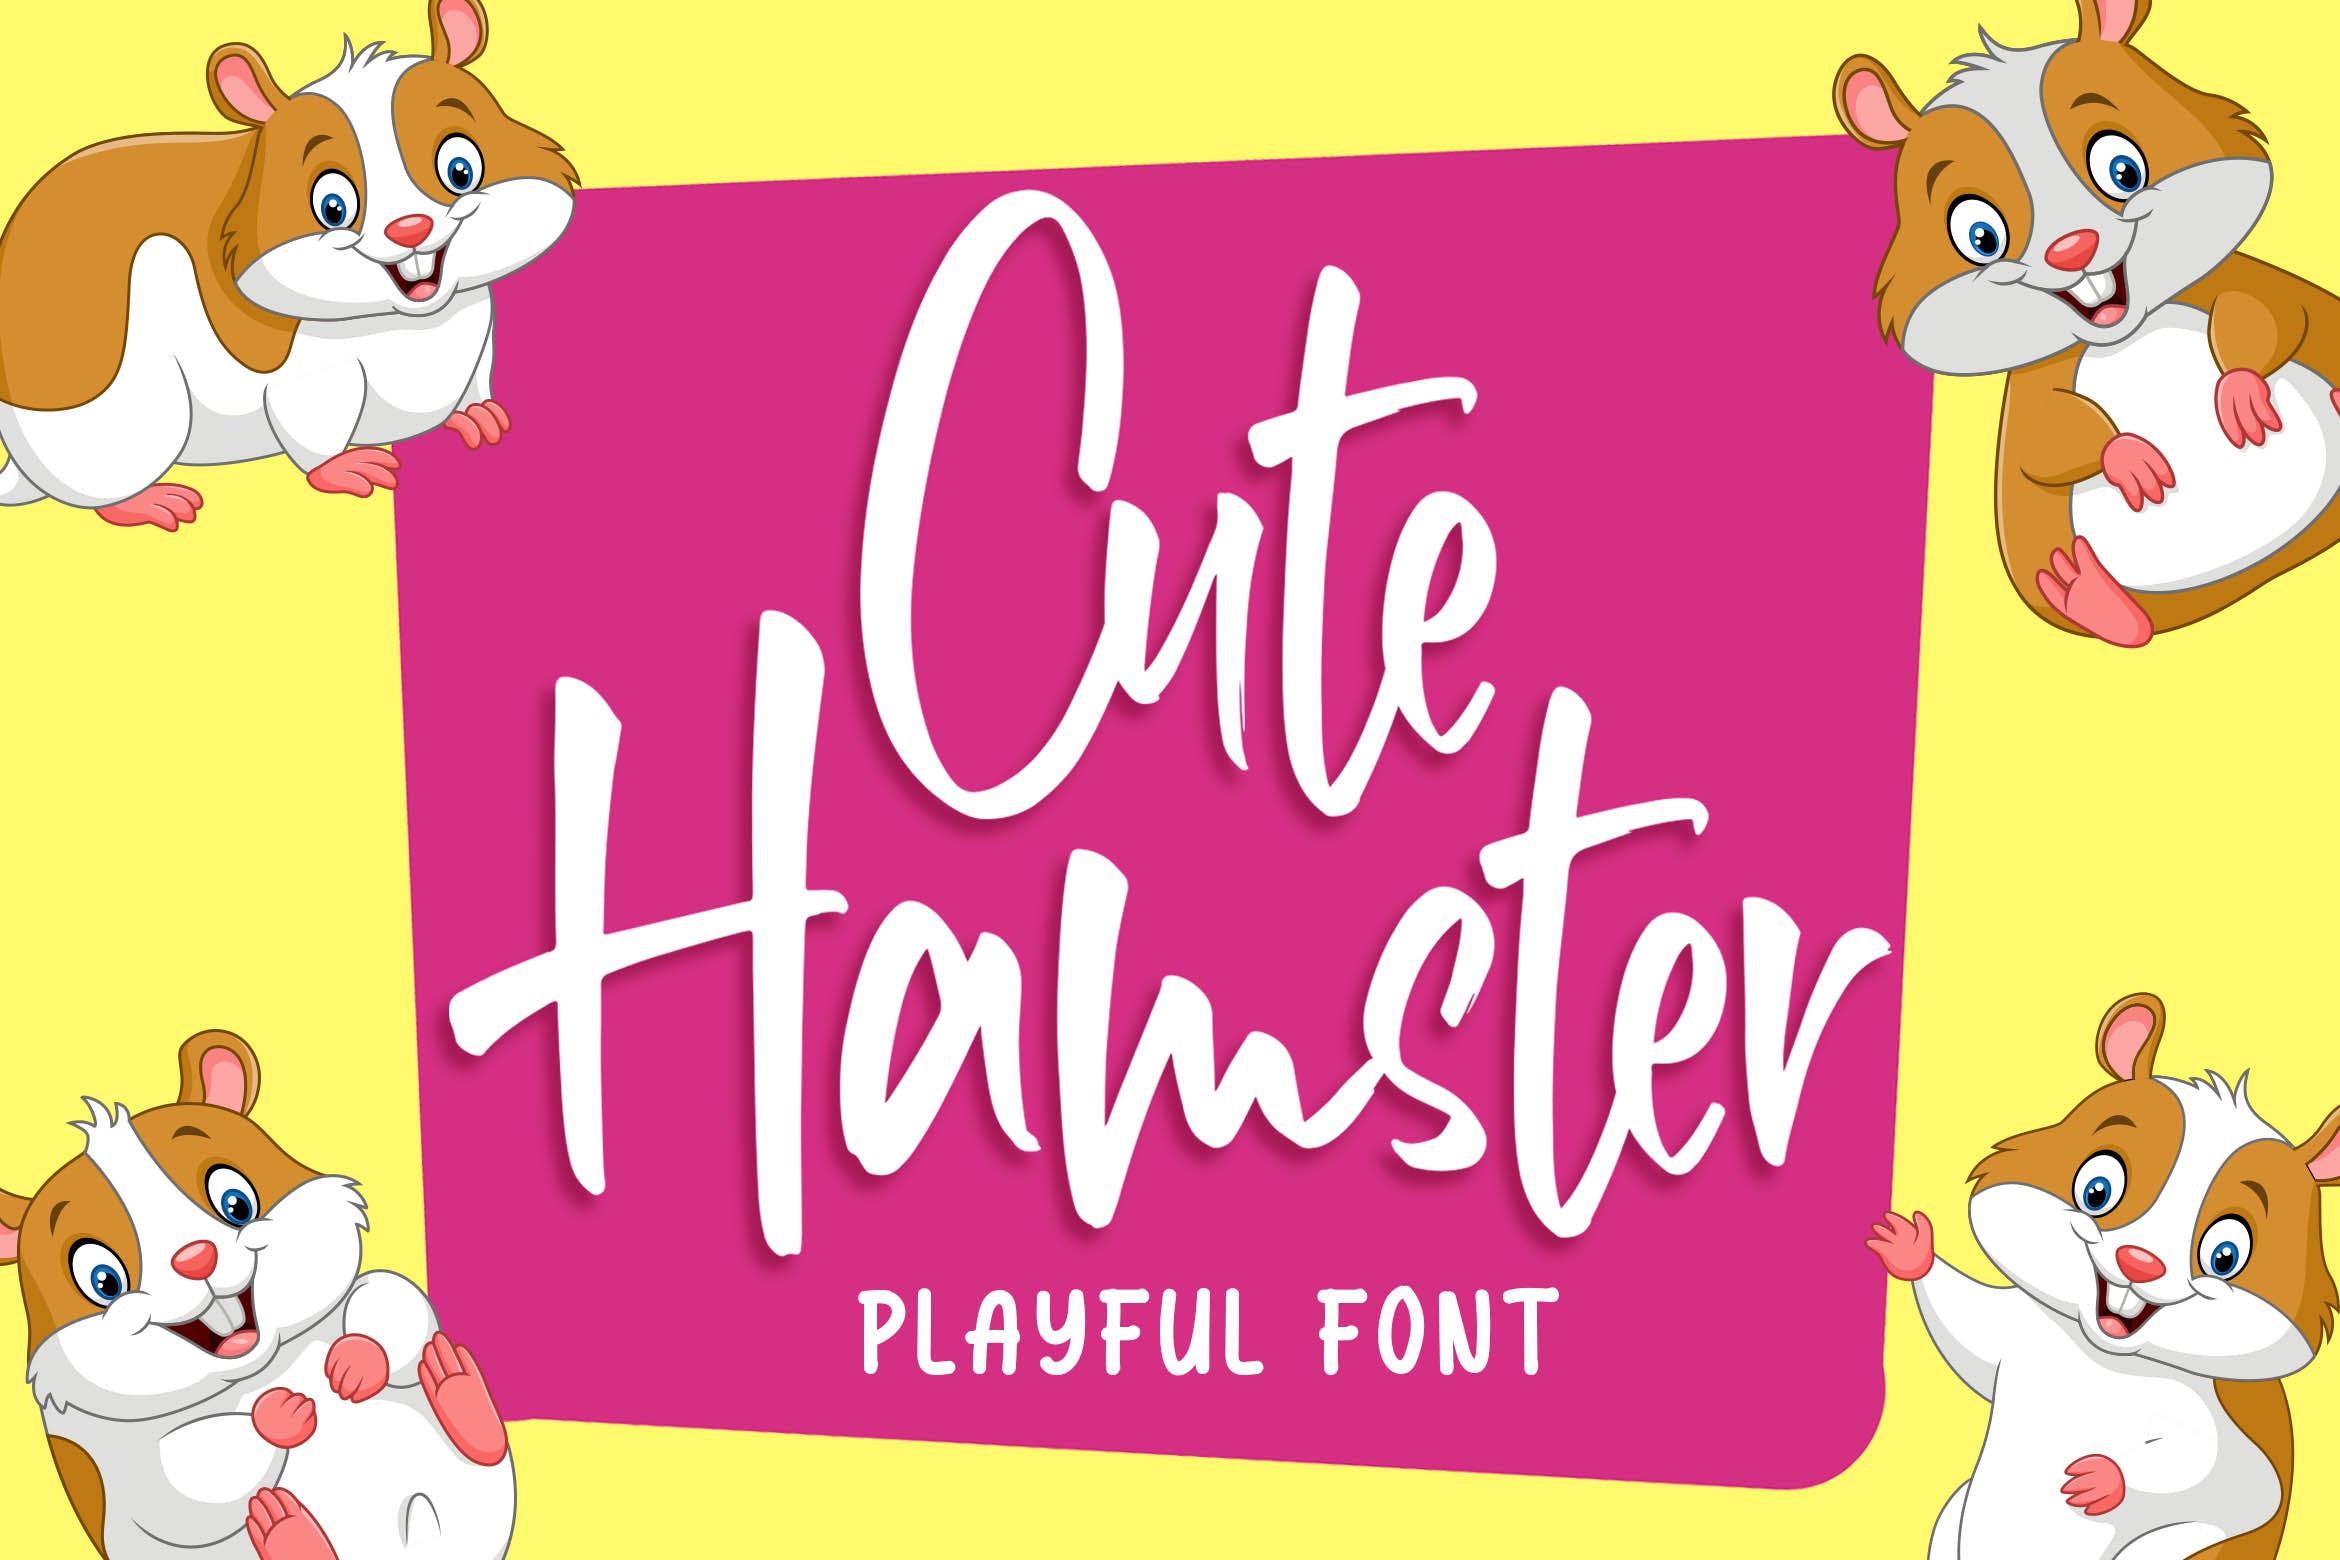 俏皮可爱风格英文手写装饰字体素材天下精选 Cute Hamster – Playful Font插图